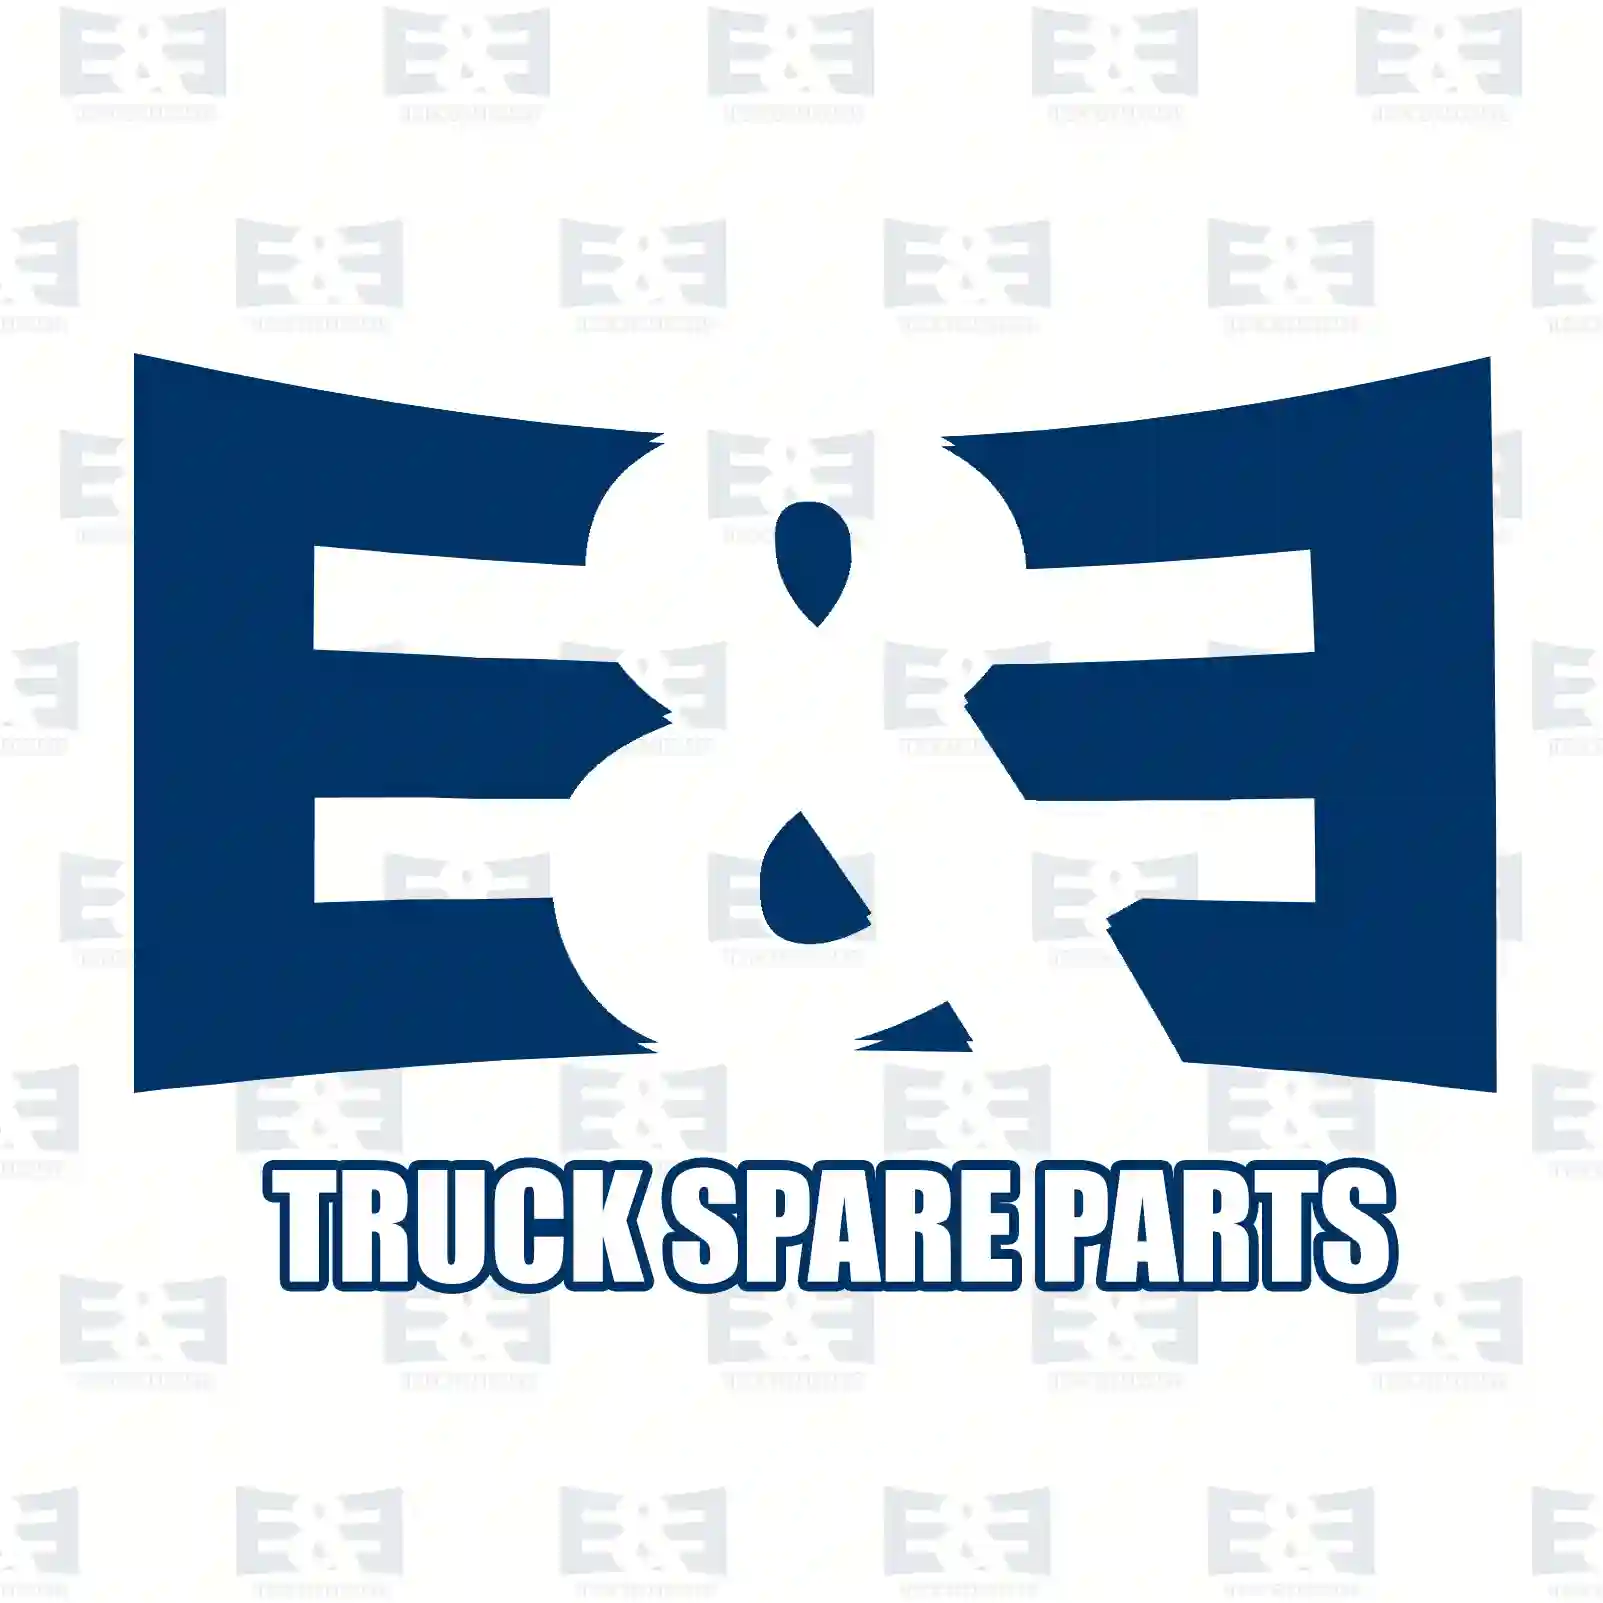 Belt tensioner, 2E2203744, 5751F2, 9658142780, 1420513, 6C1Q-6A228-AB, 5751F2 ||  2E2203744 E&E Truck Spare Parts | Truck Spare Parts, Auotomotive Spare Parts Belt tensioner, 2E2203744, 5751F2, 9658142780, 1420513, 6C1Q-6A228-AB, 5751F2 ||  2E2203744 E&E Truck Spare Parts | Truck Spare Parts, Auotomotive Spare Parts